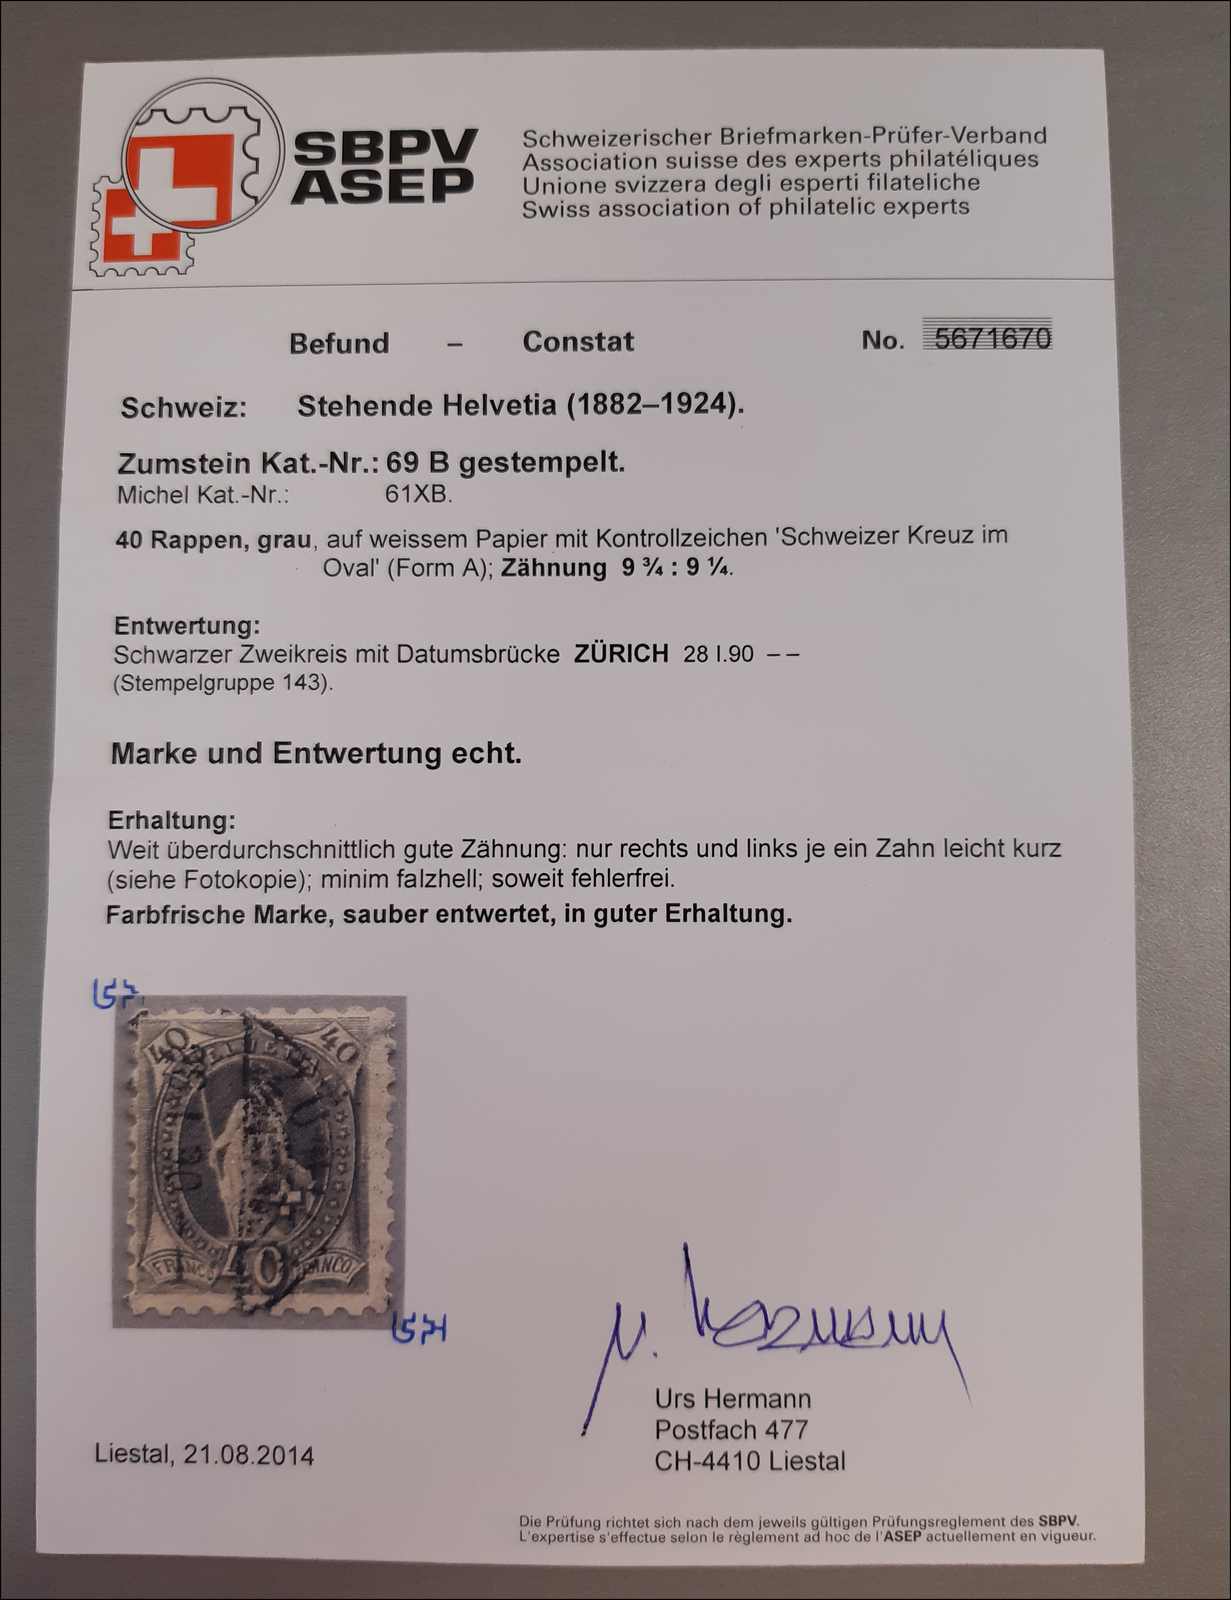 Lot 138 - schweiz Schweiz Sitzende Helvetia gezähnt -  Rolli Auctions Auction #68 Day 1